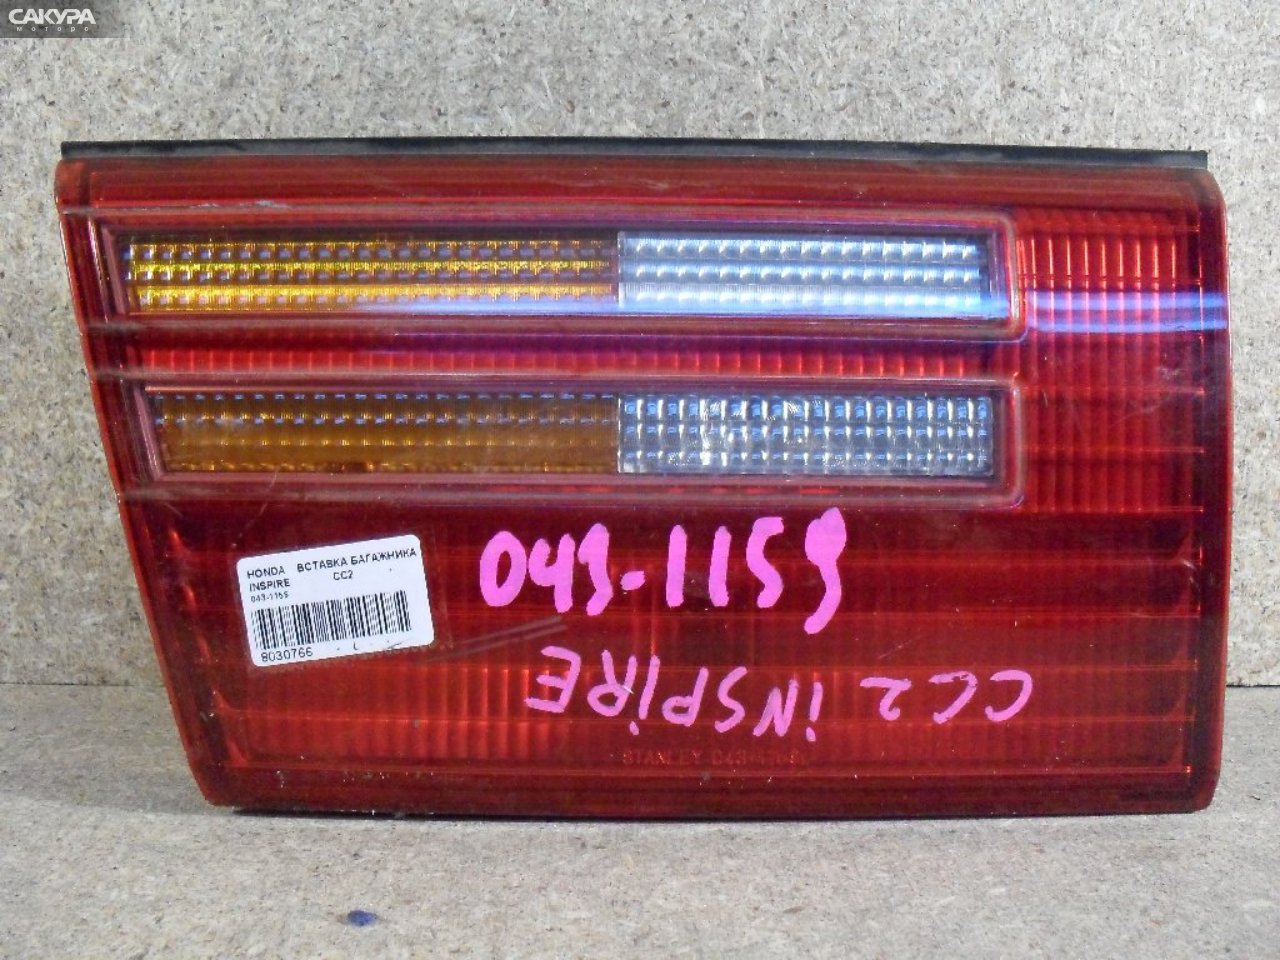 Фонарь вставка багажника левый Honda Inspire CC2 043-1159: купить в Сакура Абакан.